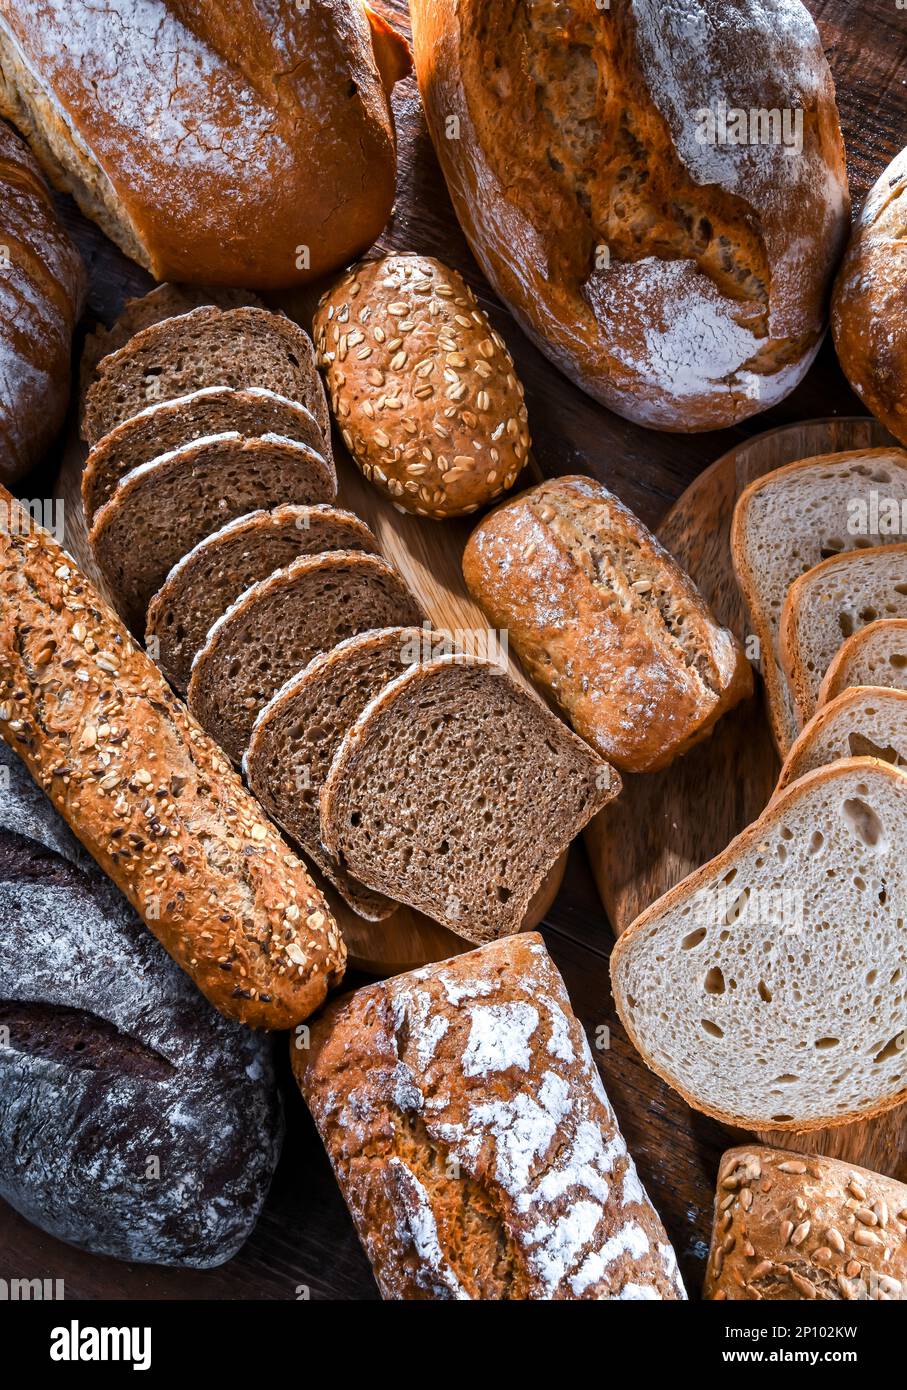 Surtido de productos de panadería incluyendo panes y panecillos Foto de stock